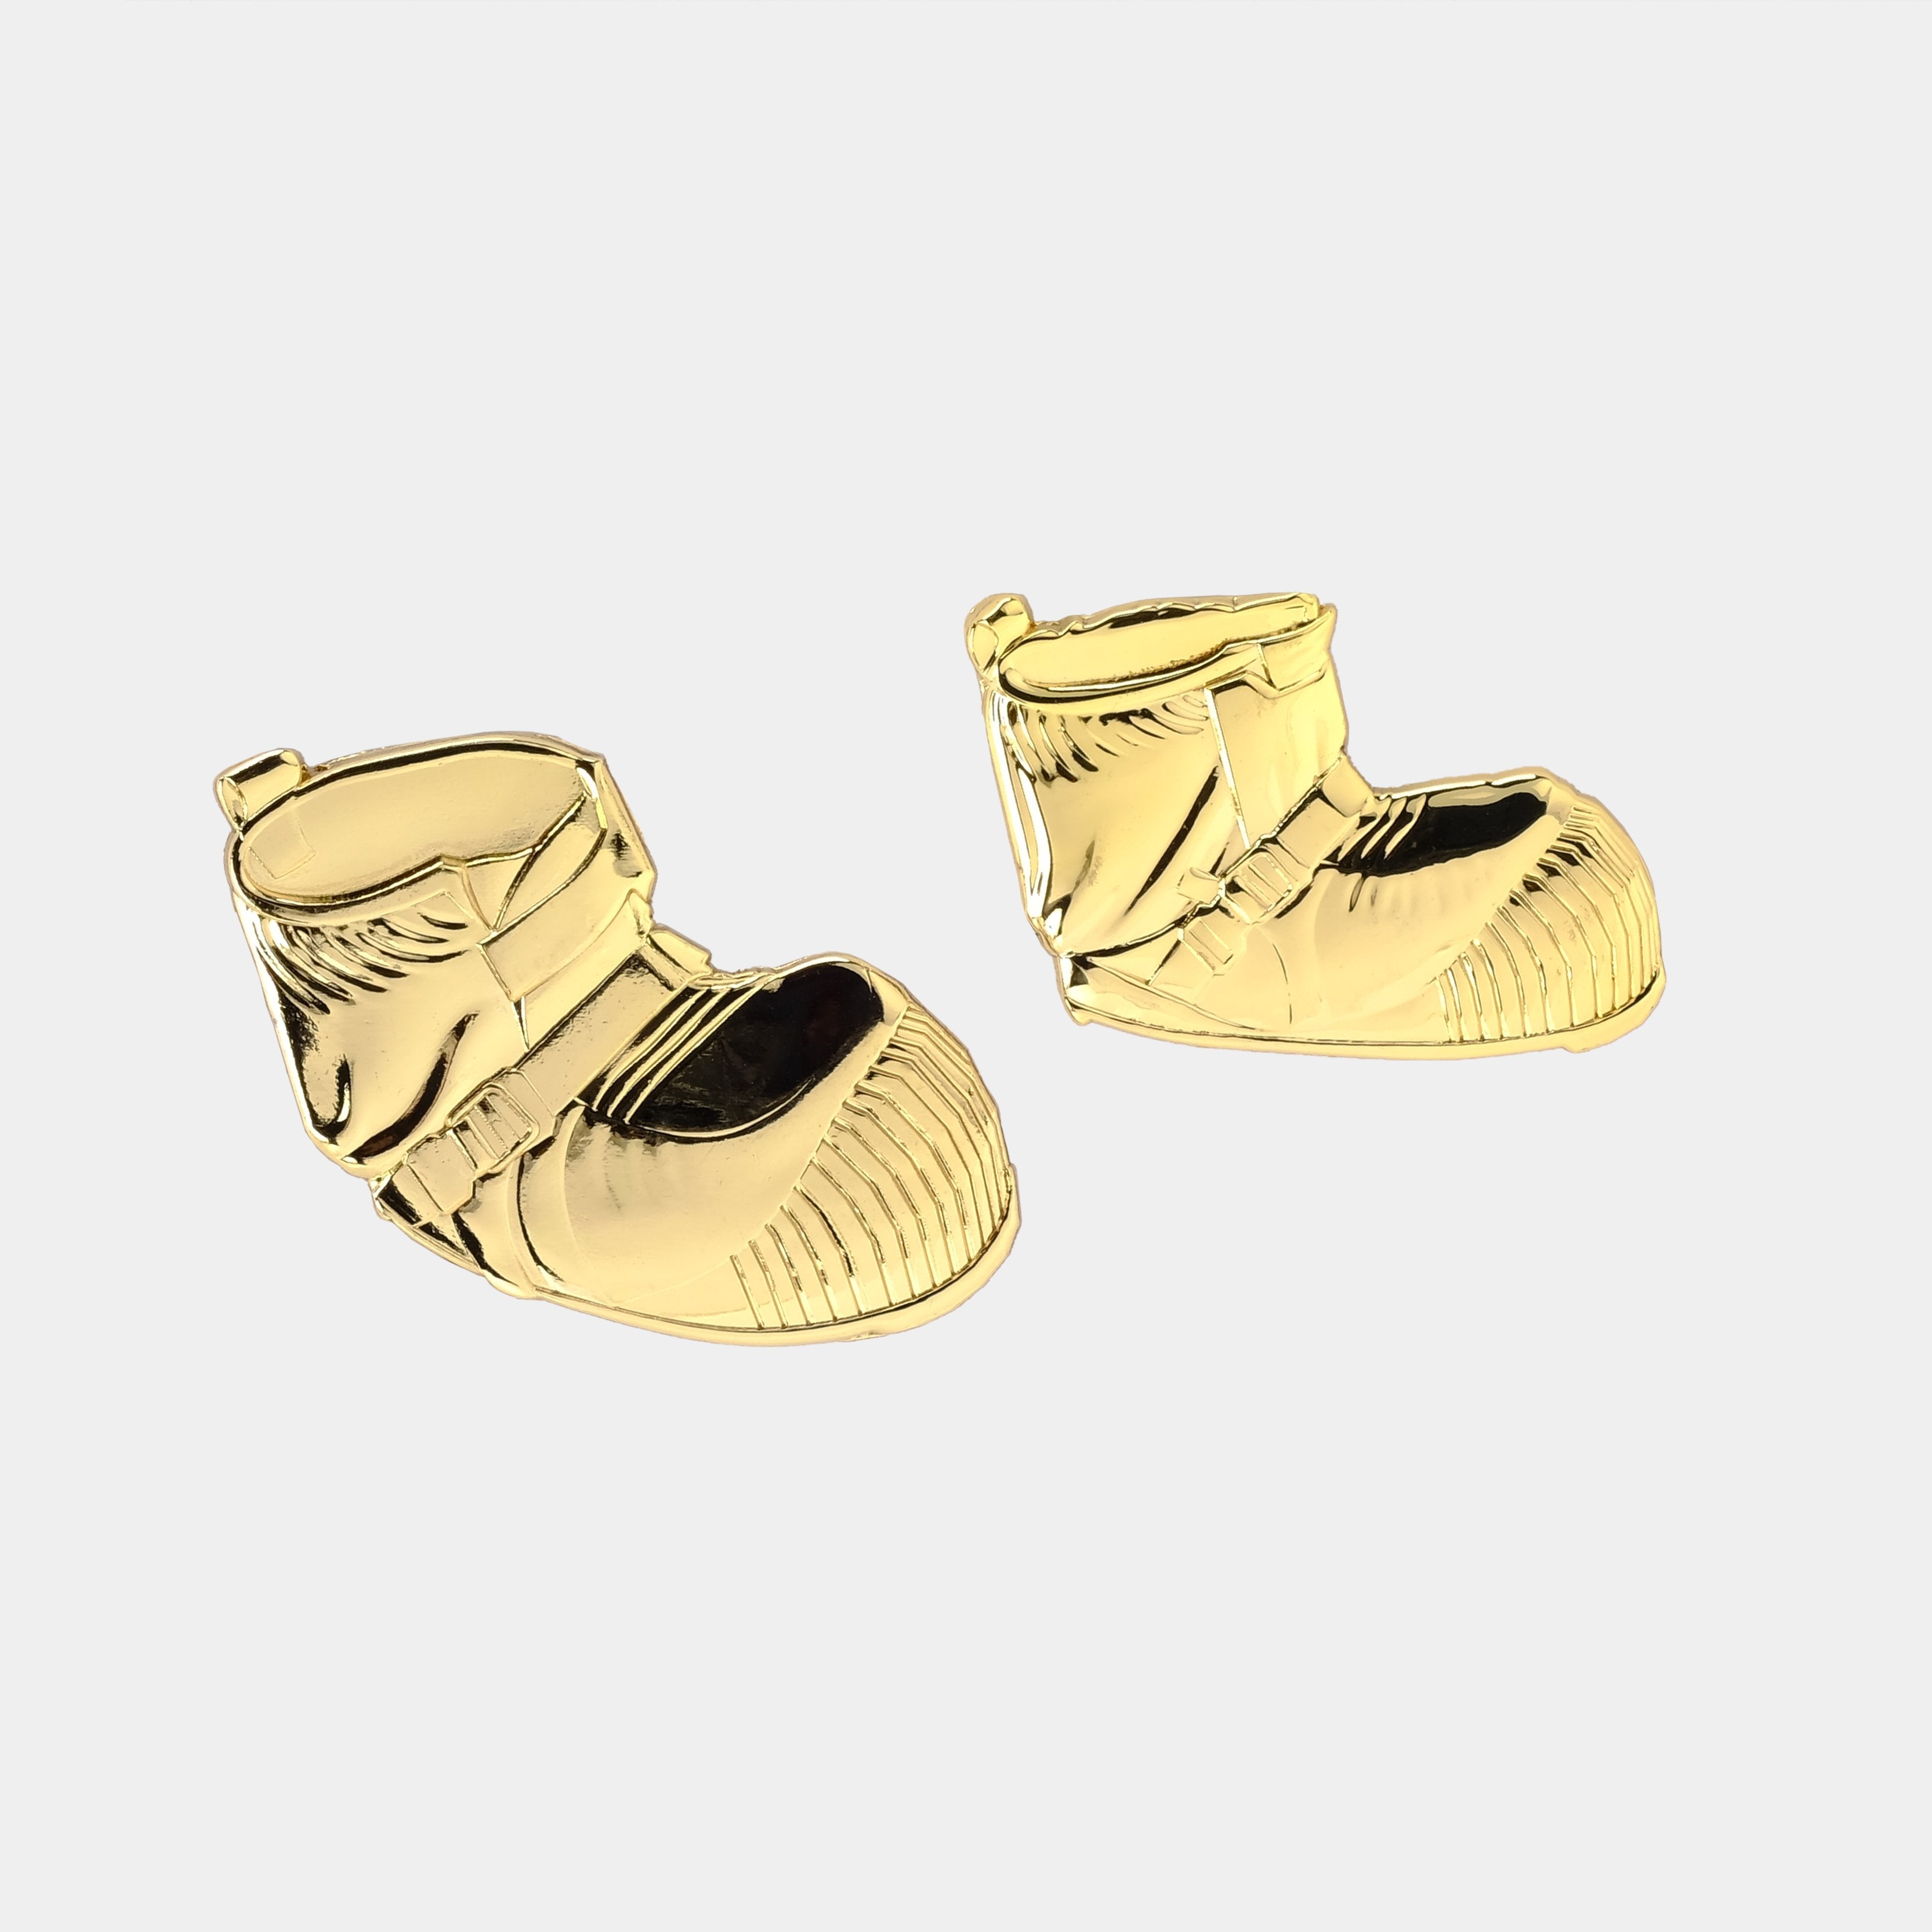 Astronaut Boots 3D Gold Pin Set